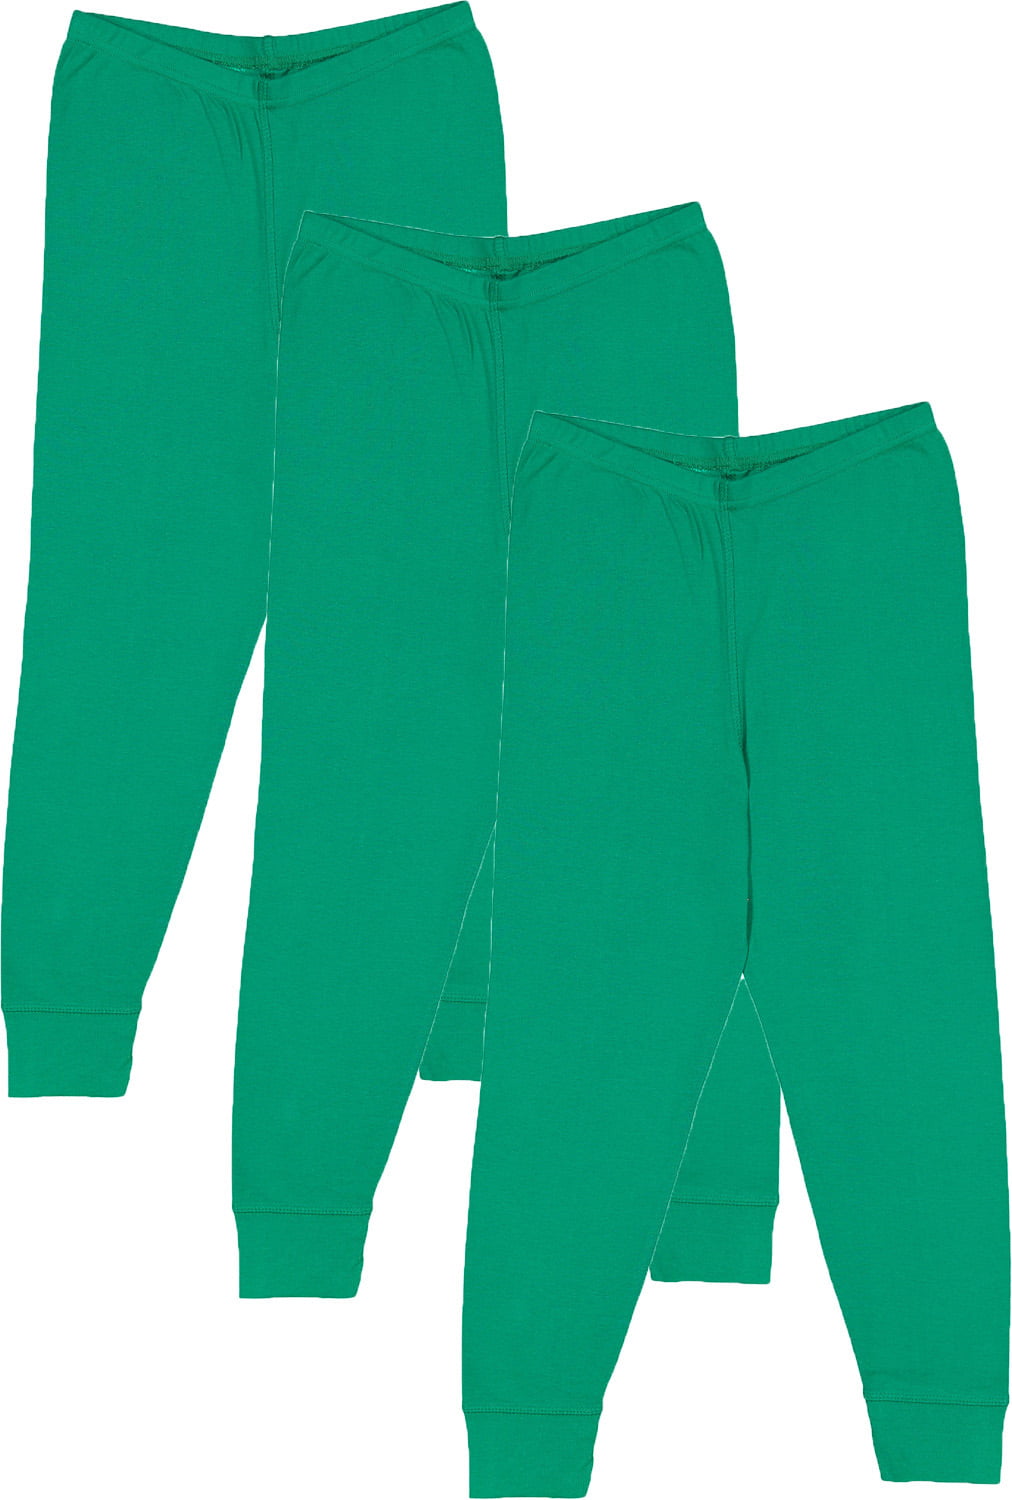 AquaGuard Girls Big Baby Rib Pajama Pant-3 Pack